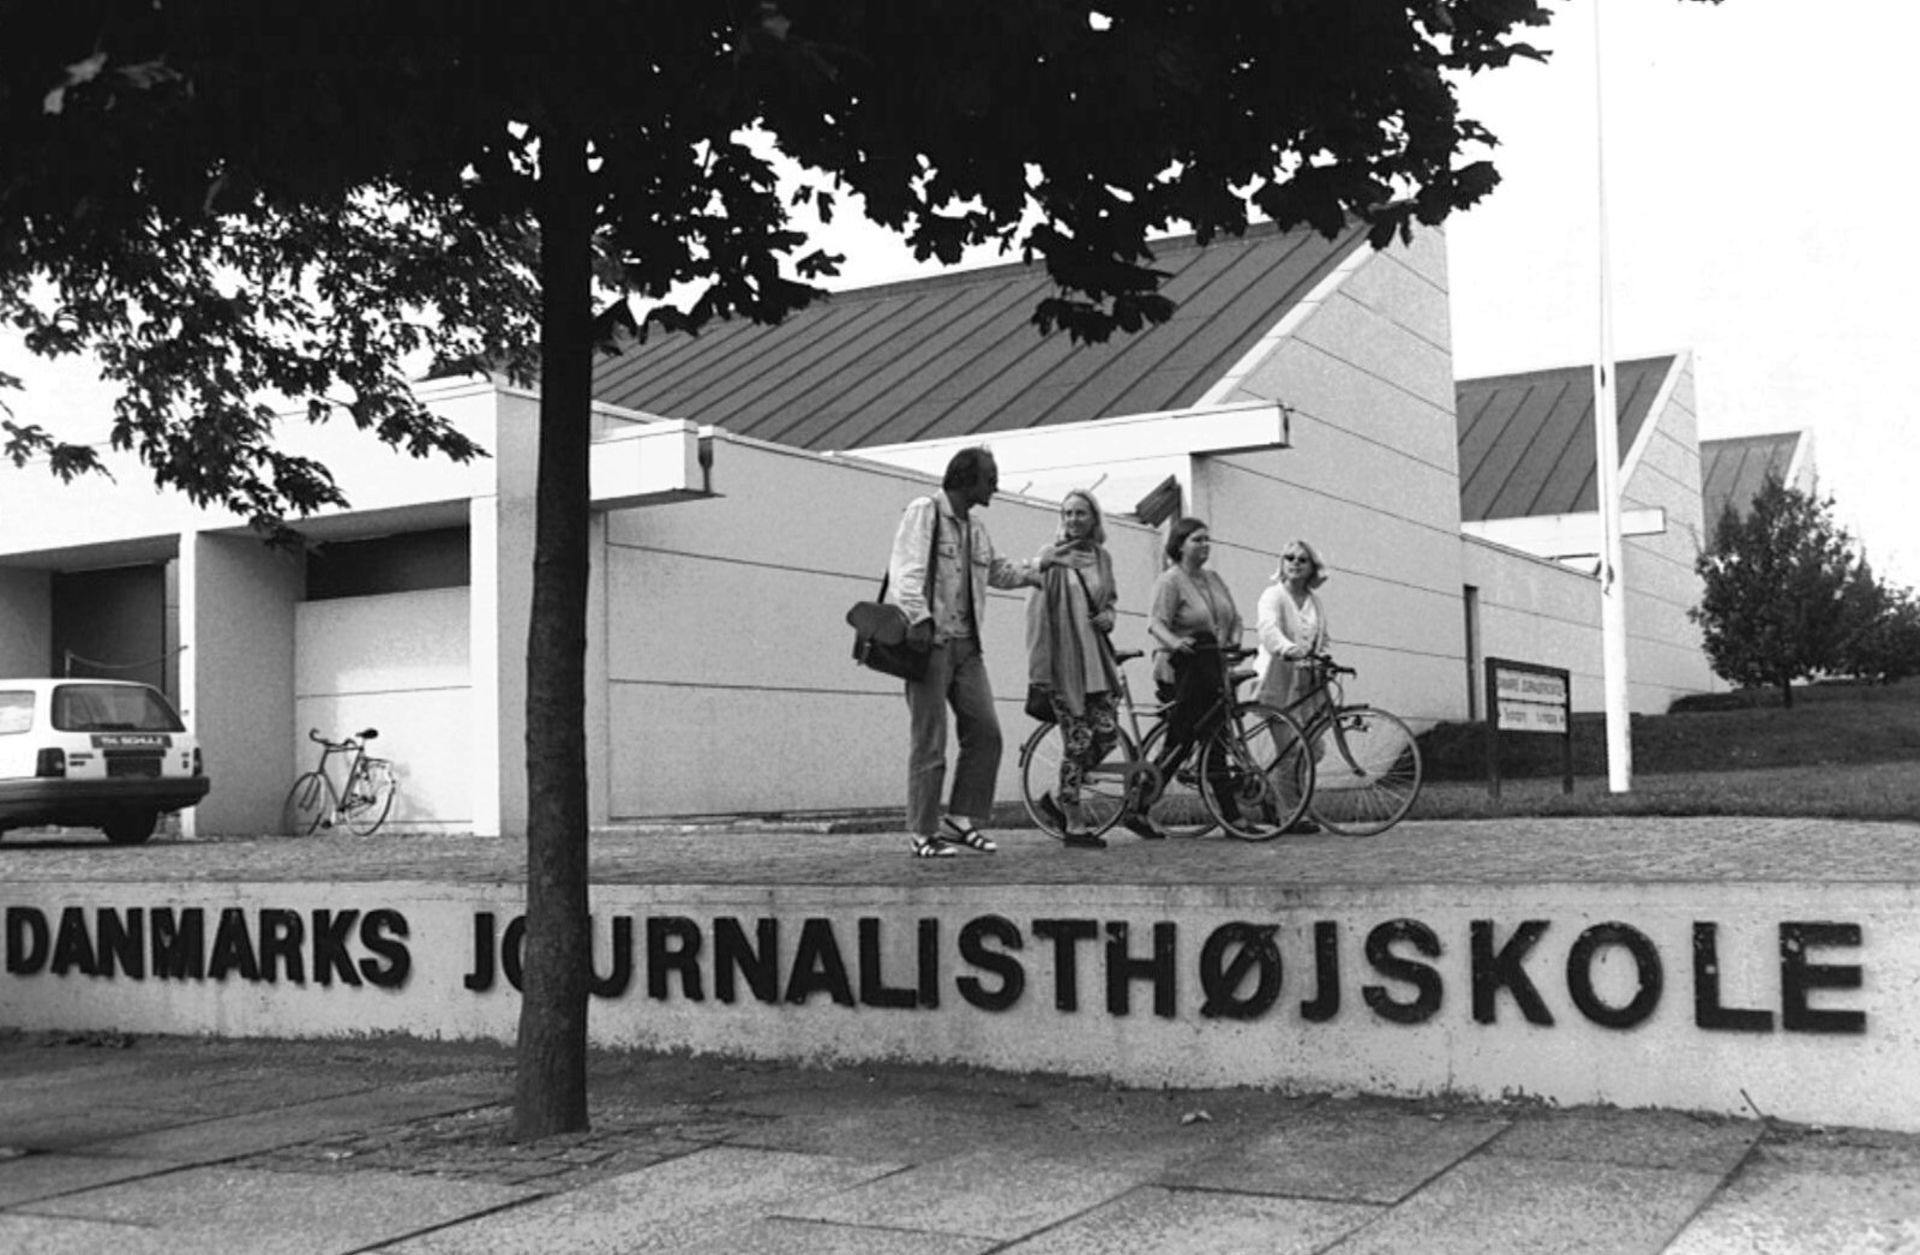 Arkivfoto af Danmarks Journalisthøjskole i Århus 1994.